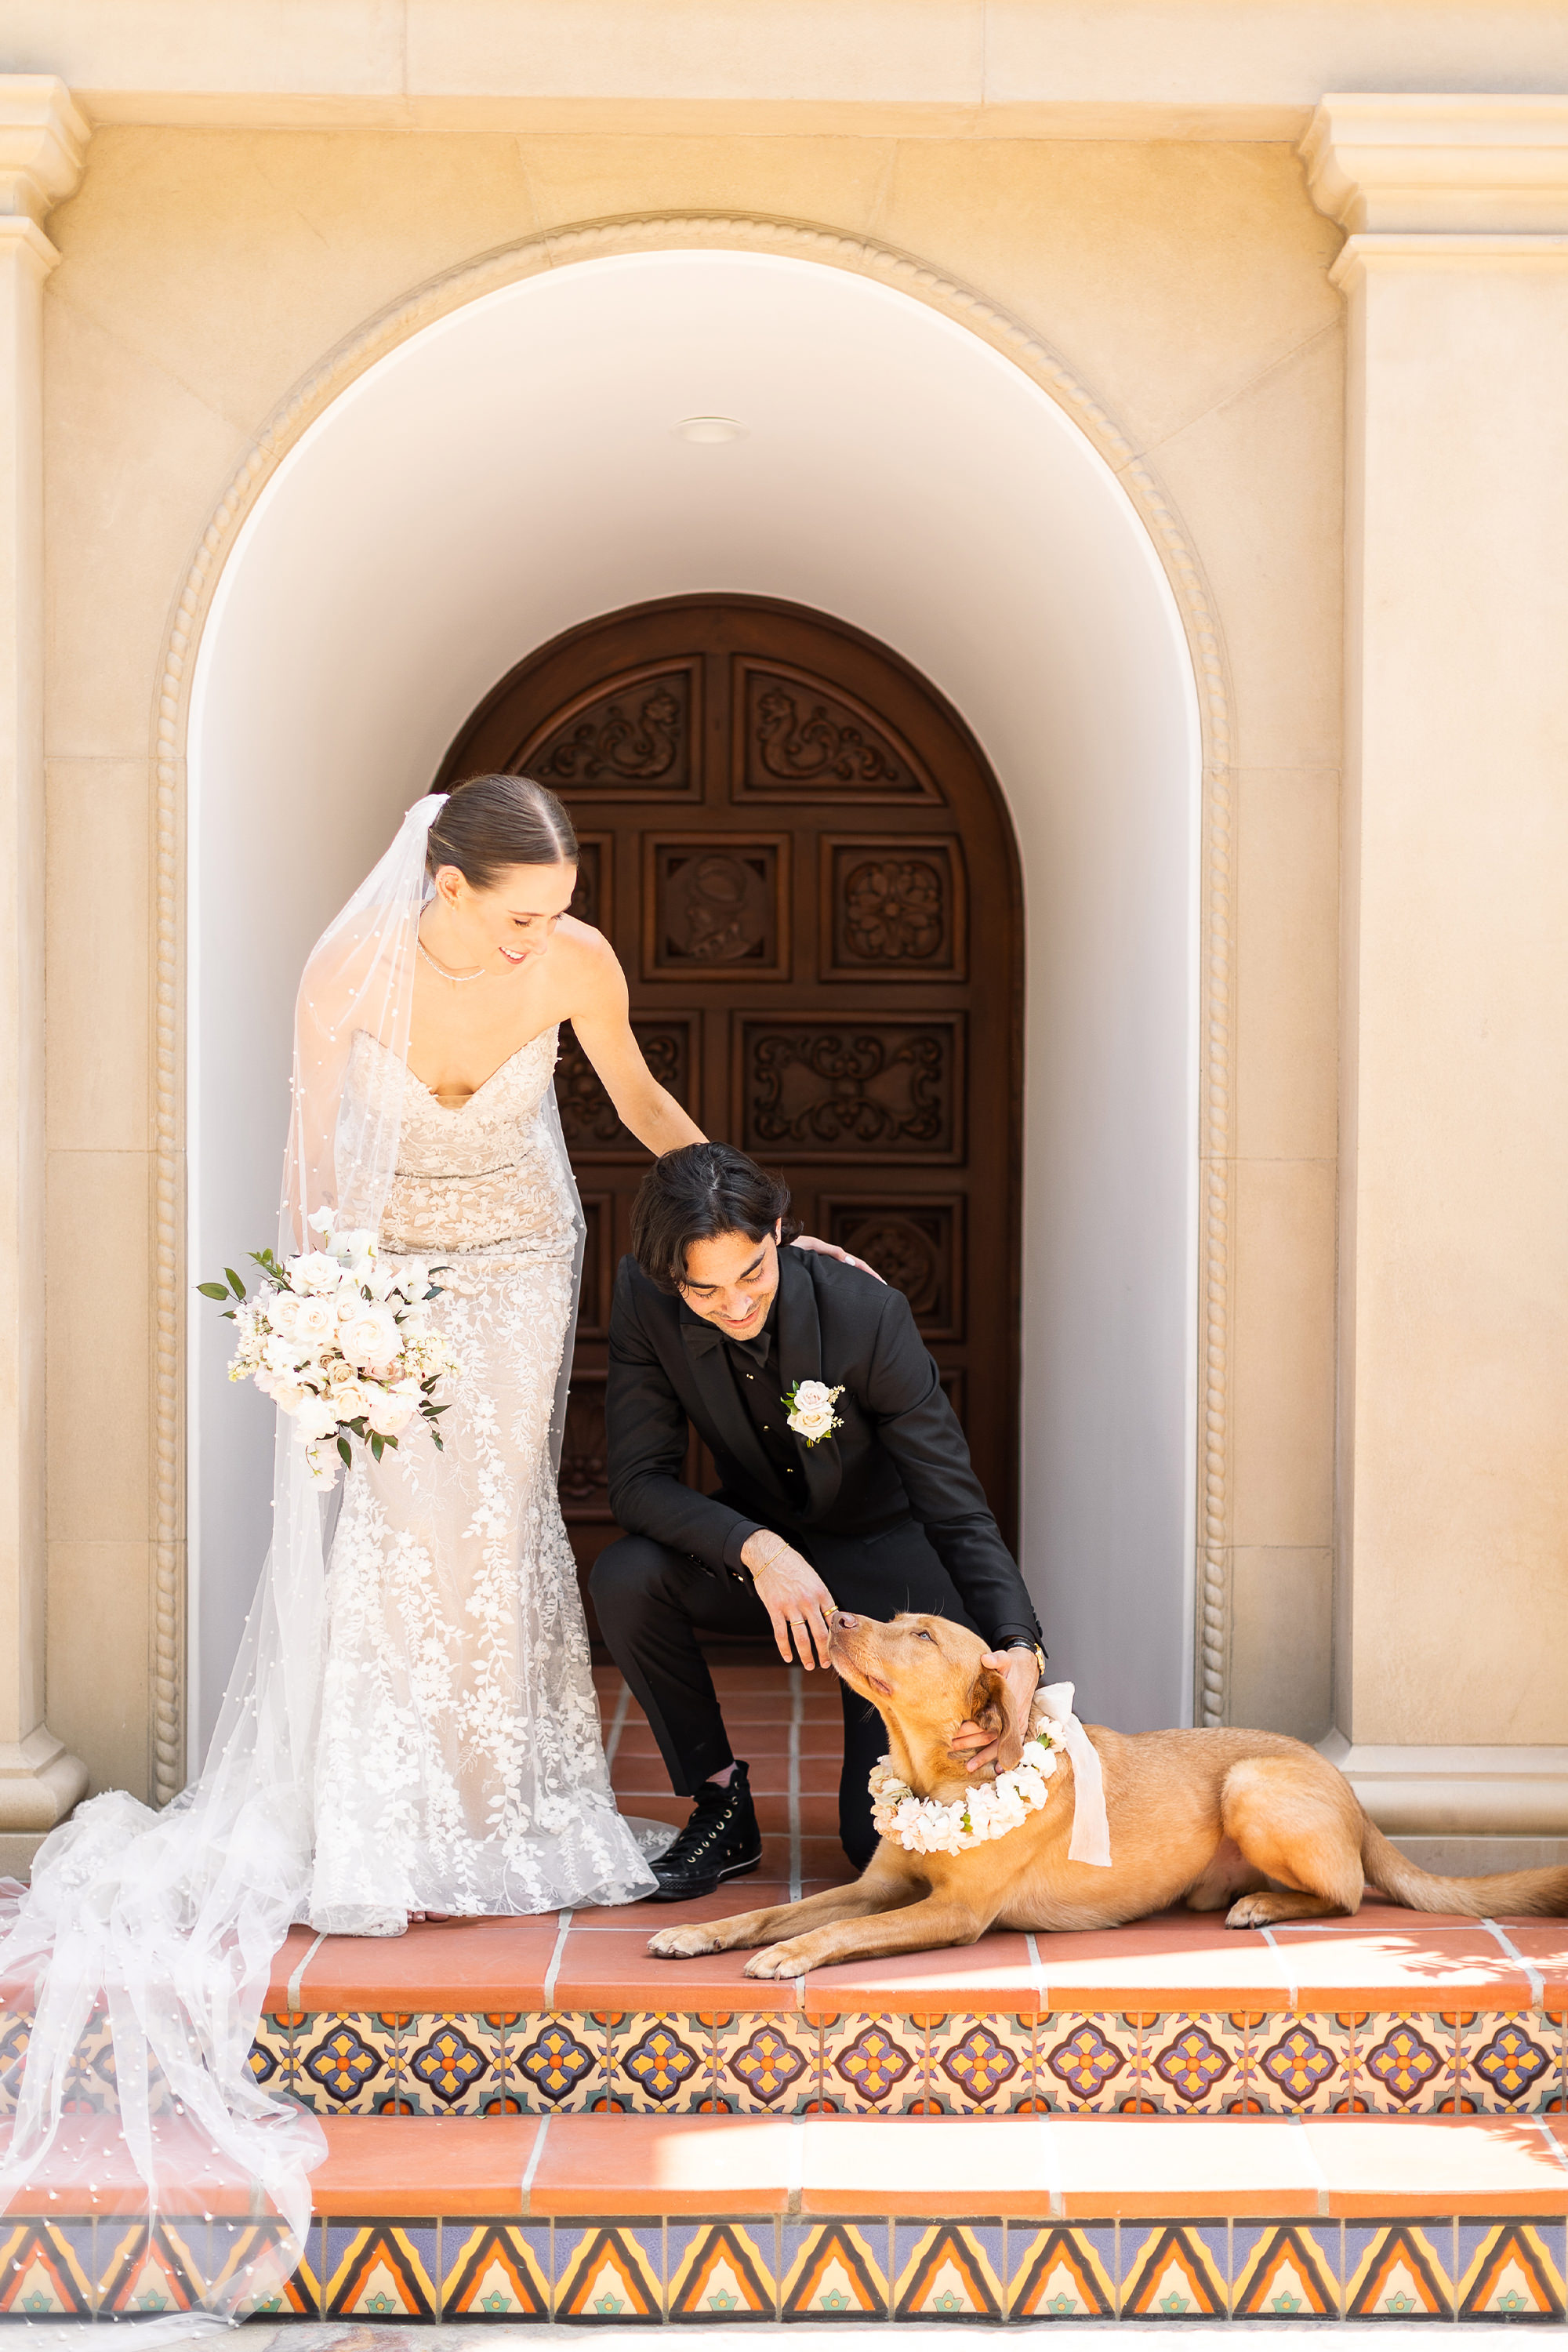 Newlyweds pose with dog